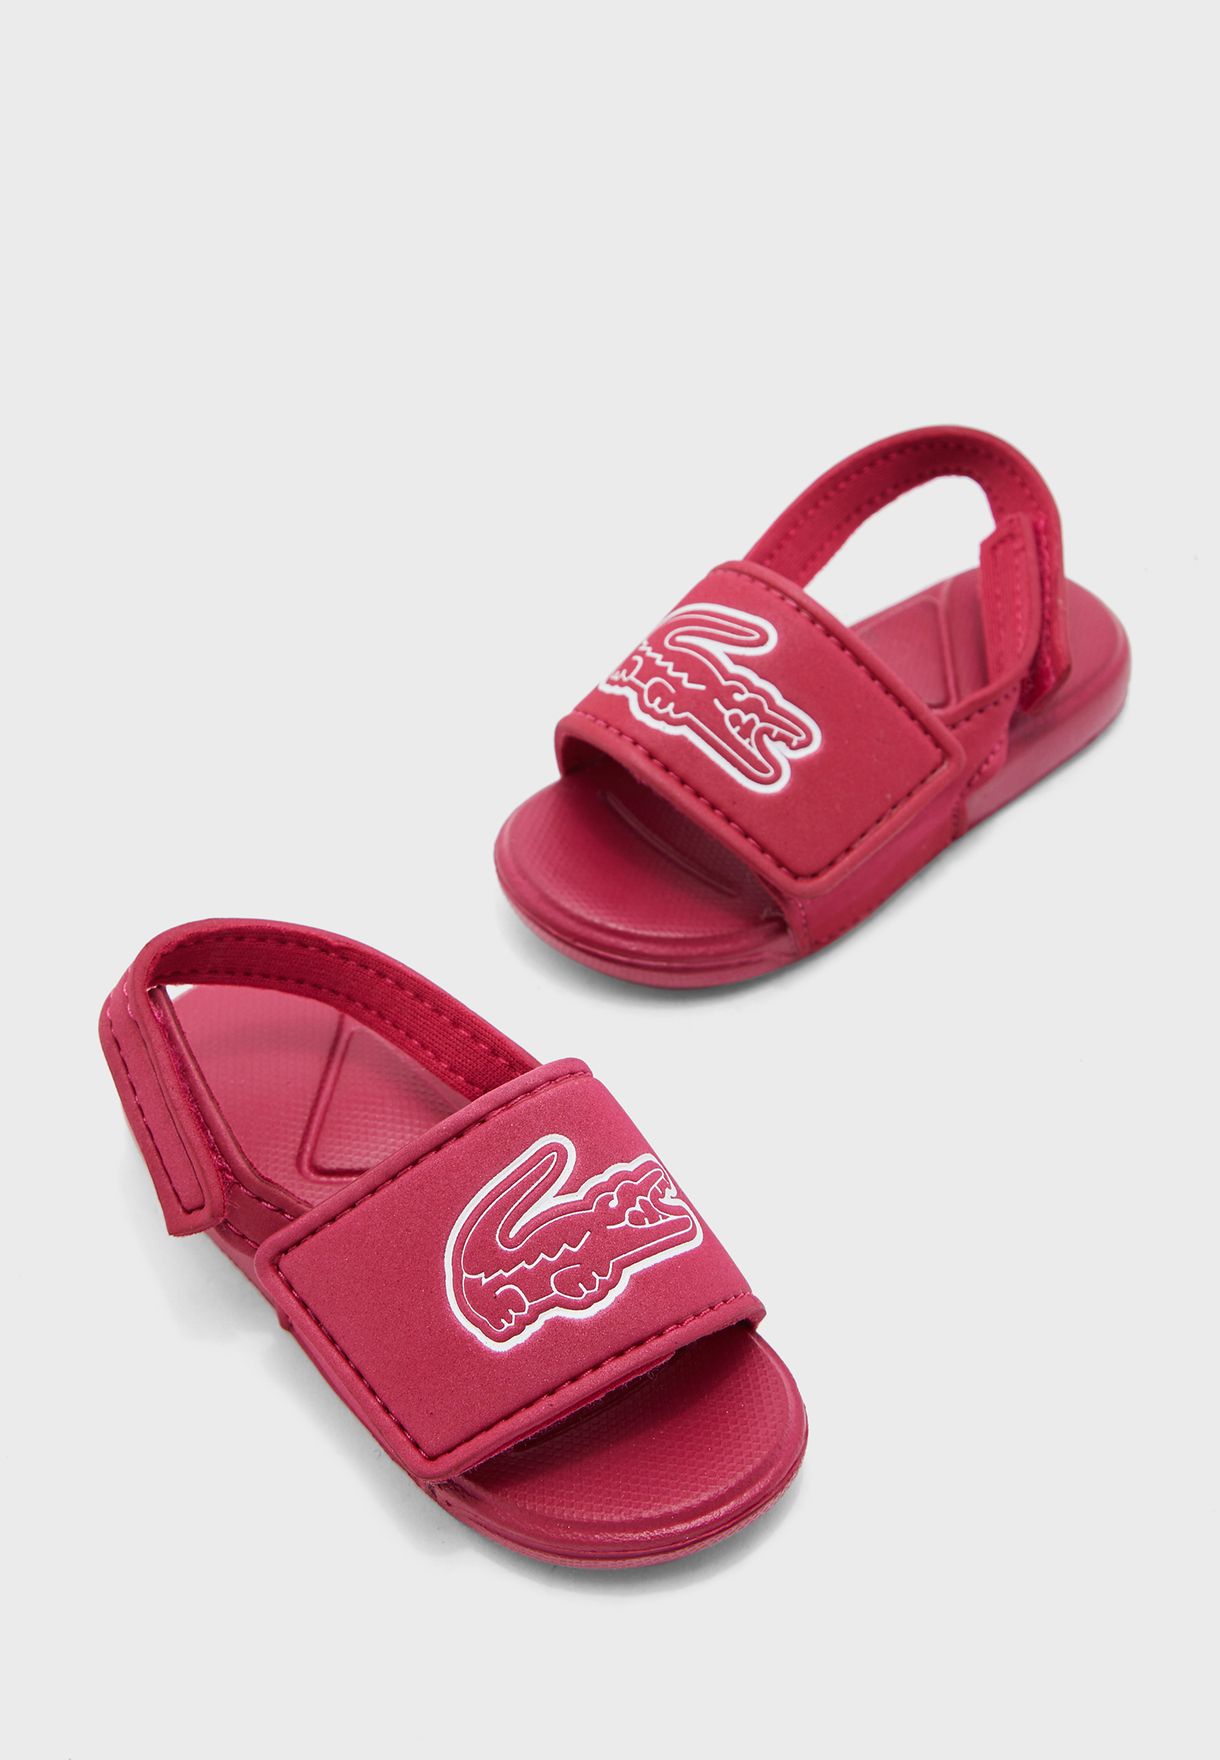 lacoste kids sandals